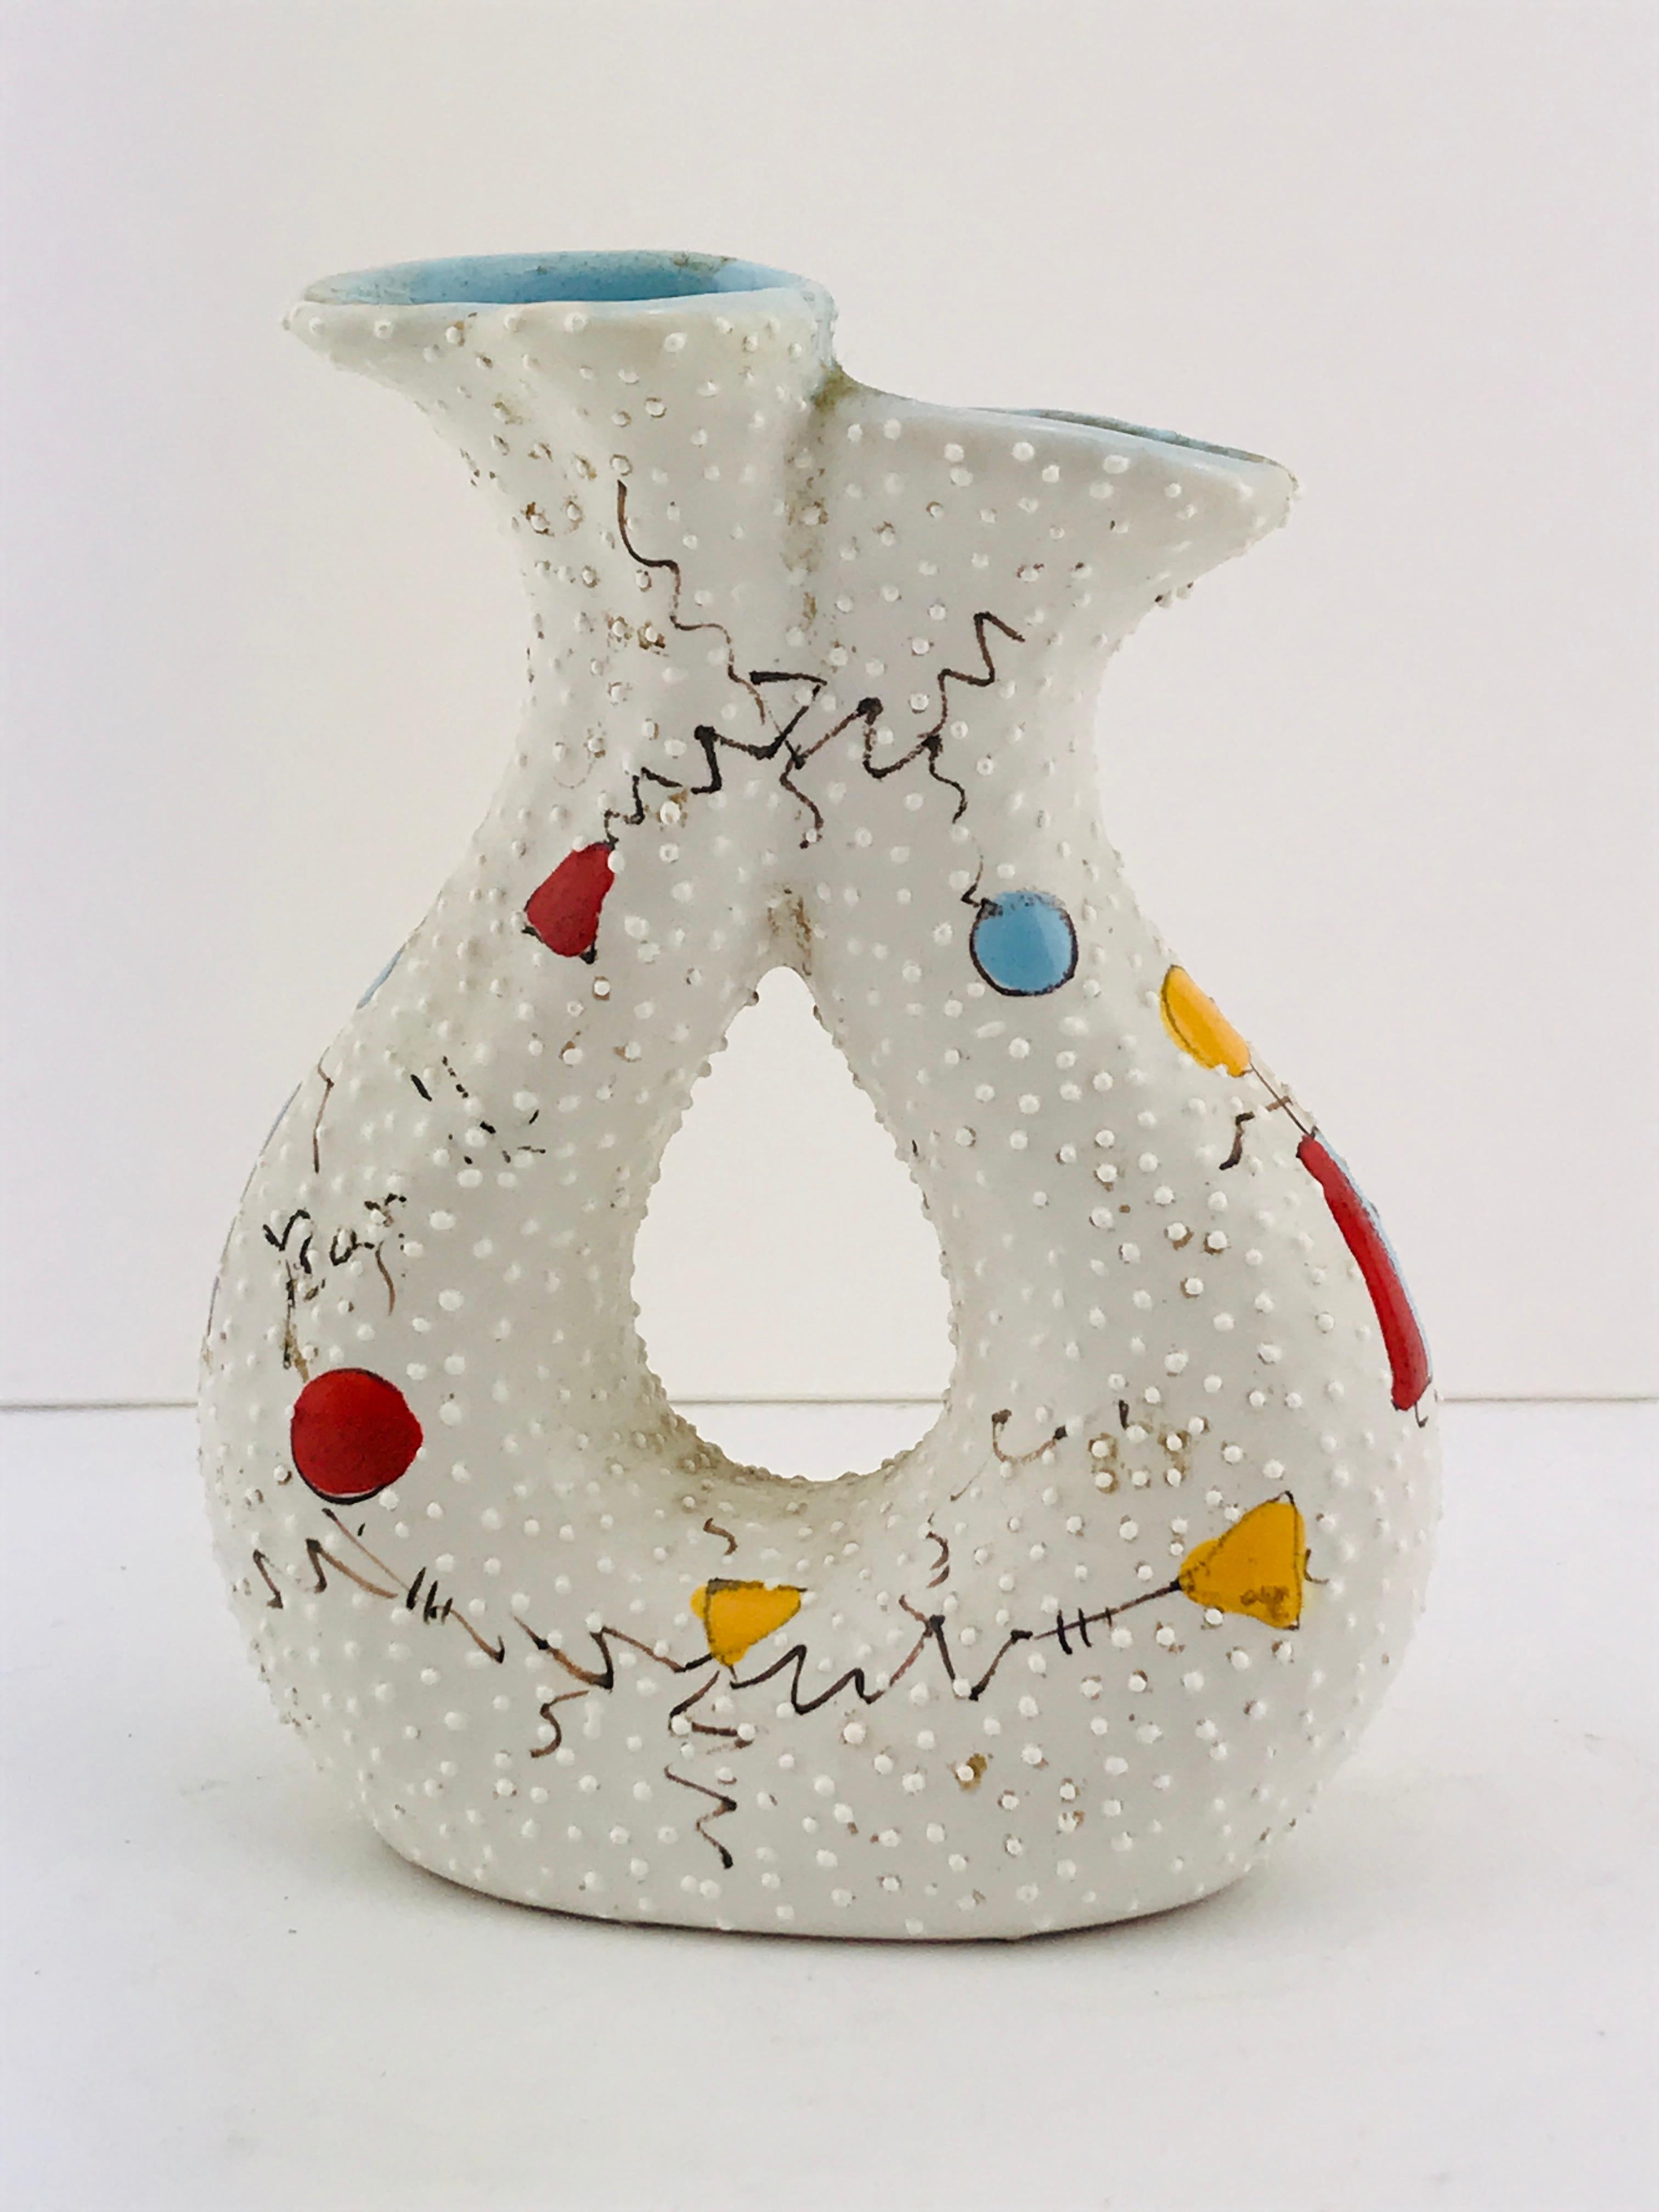 Italian Midcentury Ceramic Vase by Gualdo Dolci, 1950s For Sale 4